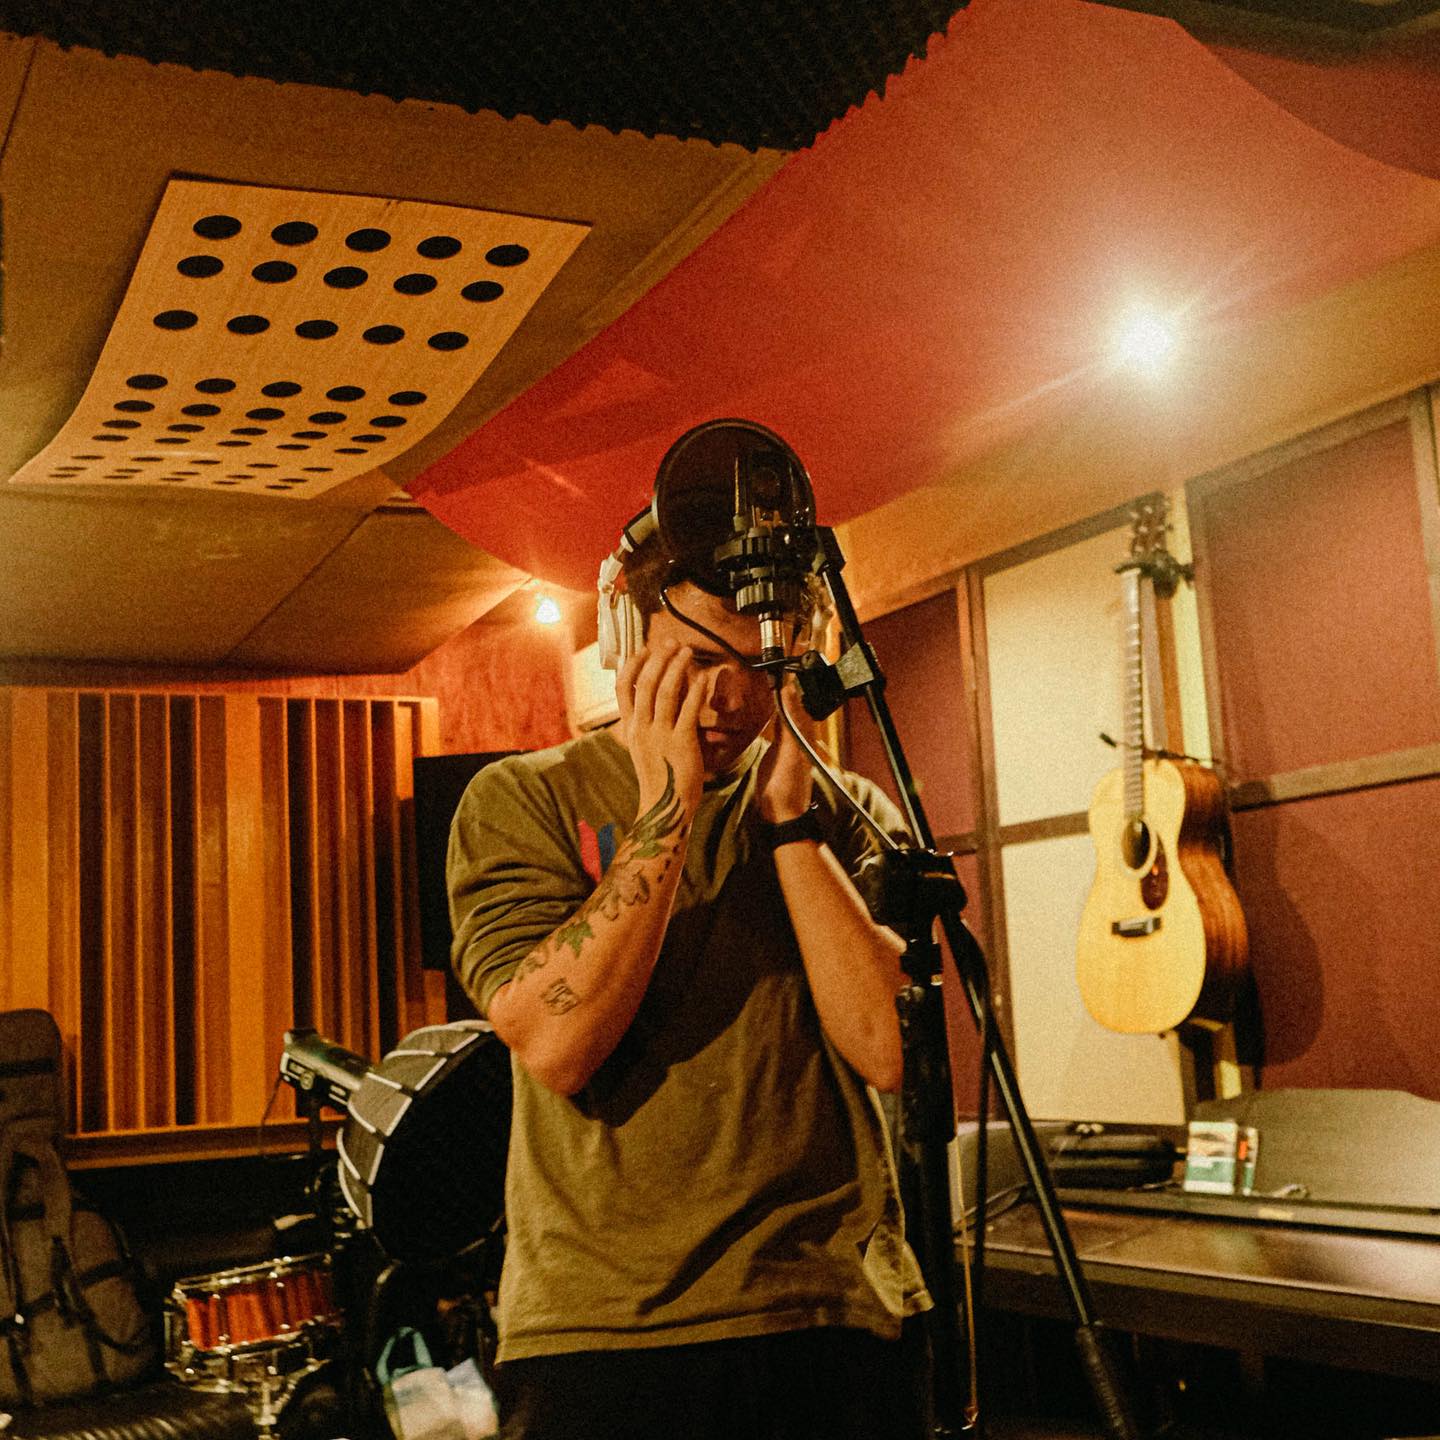 juan karlos behind the scenes recording “Sad Songs and Bullshit Part 1” | via Instagram @juankarlos